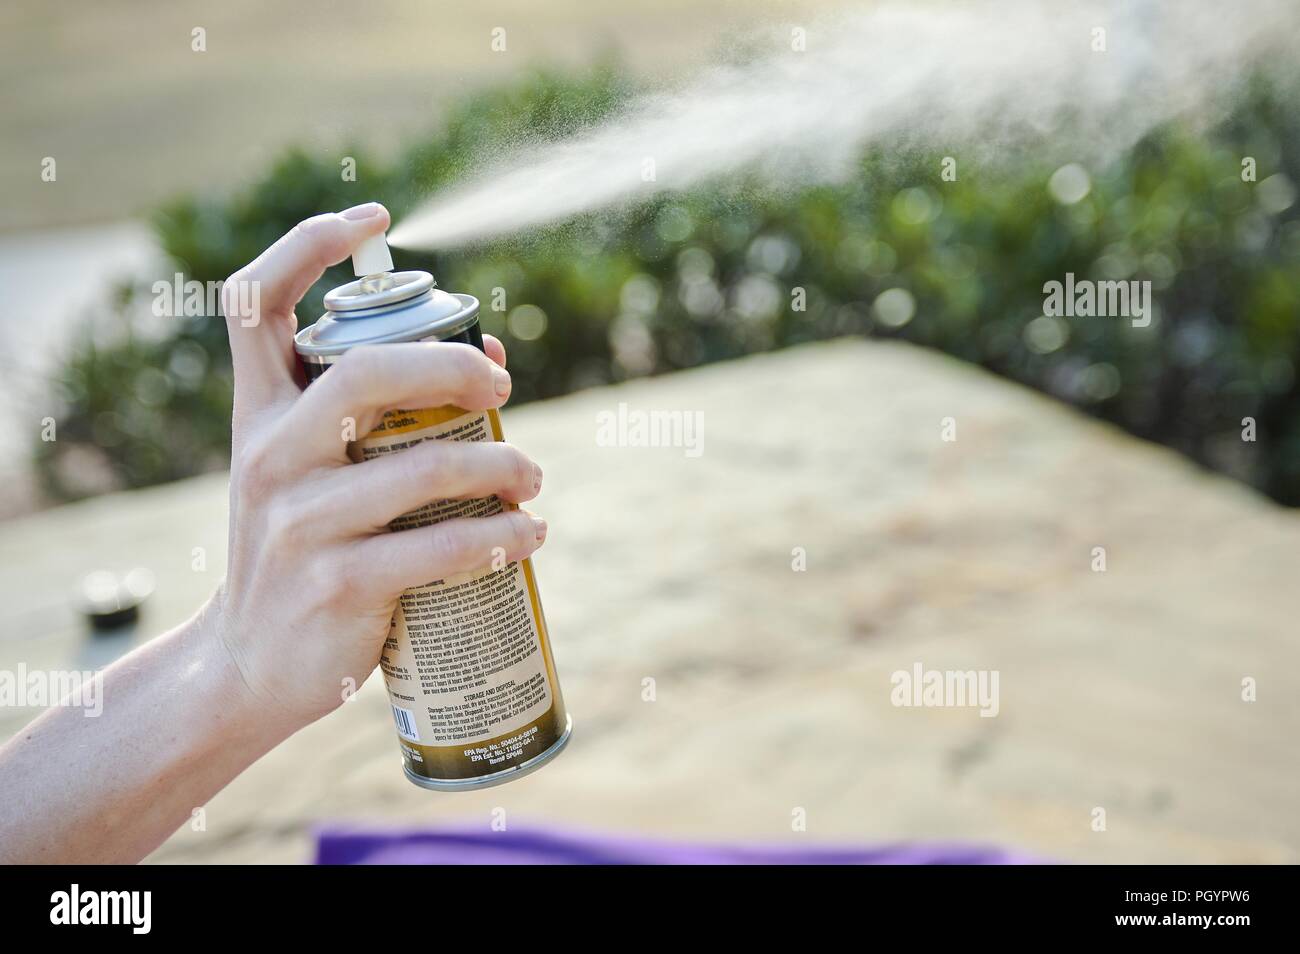 Las mujeres que usan registrado EPA spray repelente de insectos, 2016. Imagen cortesía de los Centros para el Control de Enfermedades (CDC) / Centro Nacional para Enfermedades infecciosas emergentes y zoonóticas (NCEZID). () Foto de stock